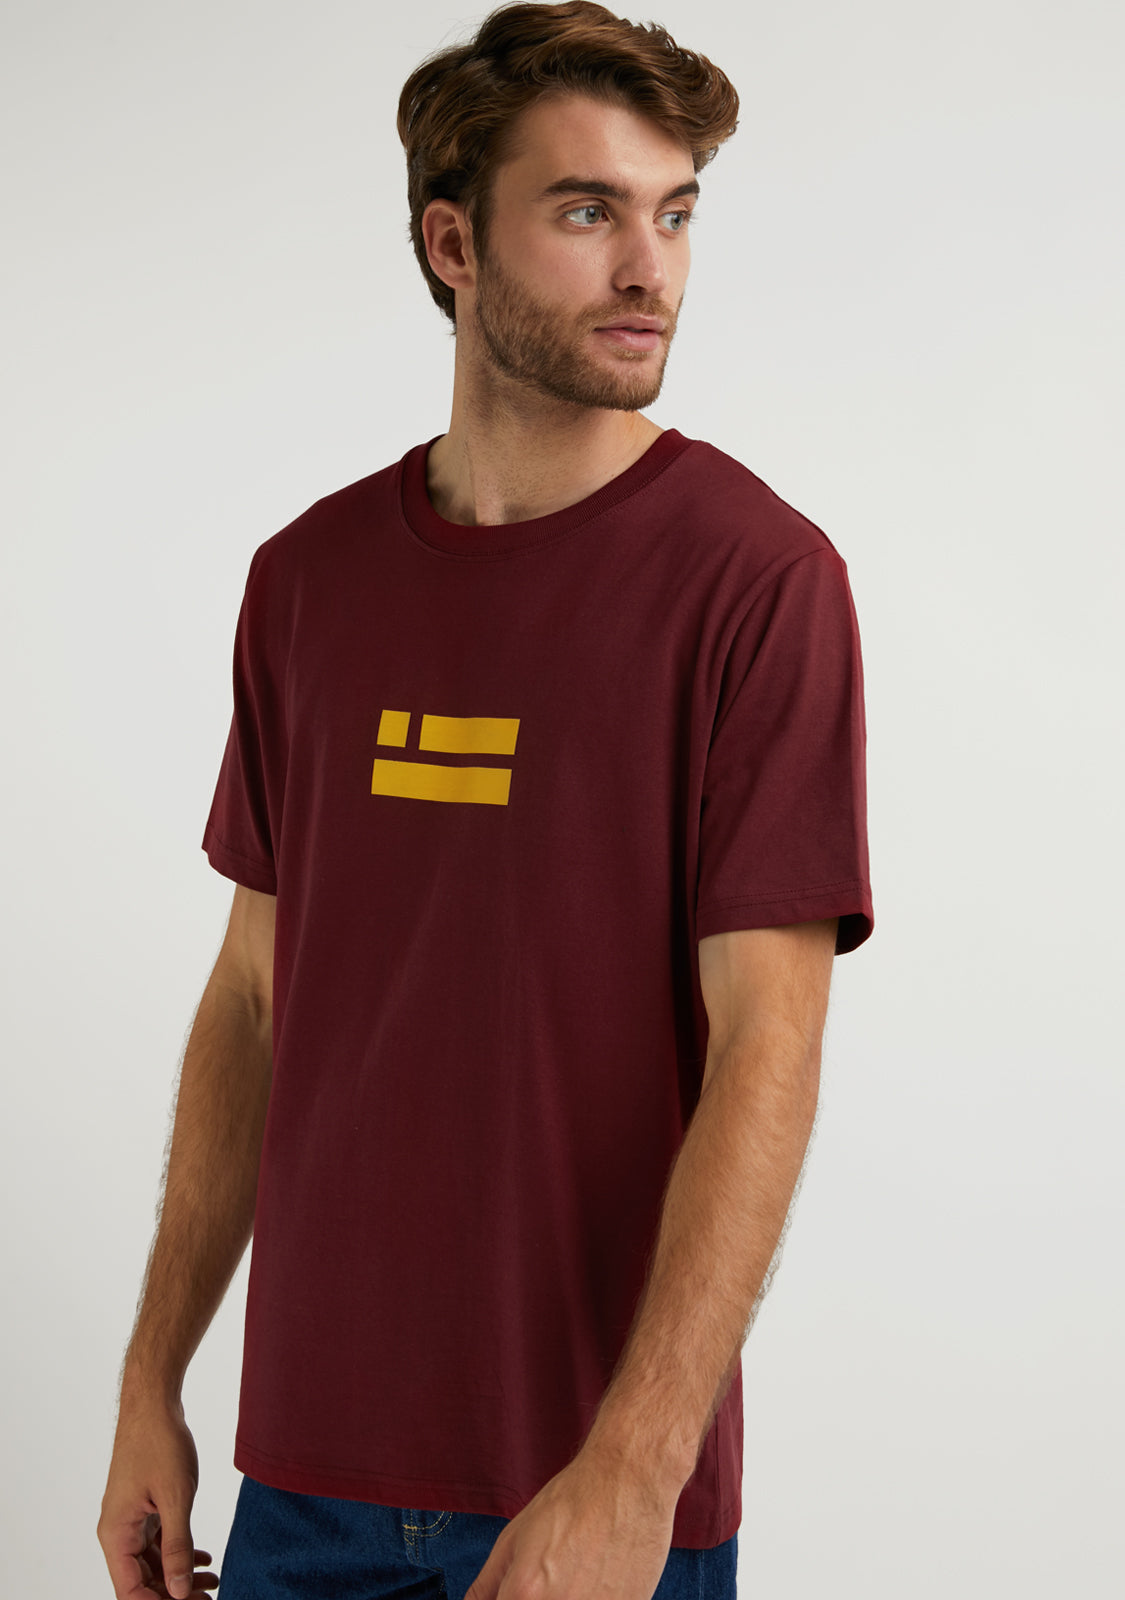 Flag T-Shirt Burgundy / Orange